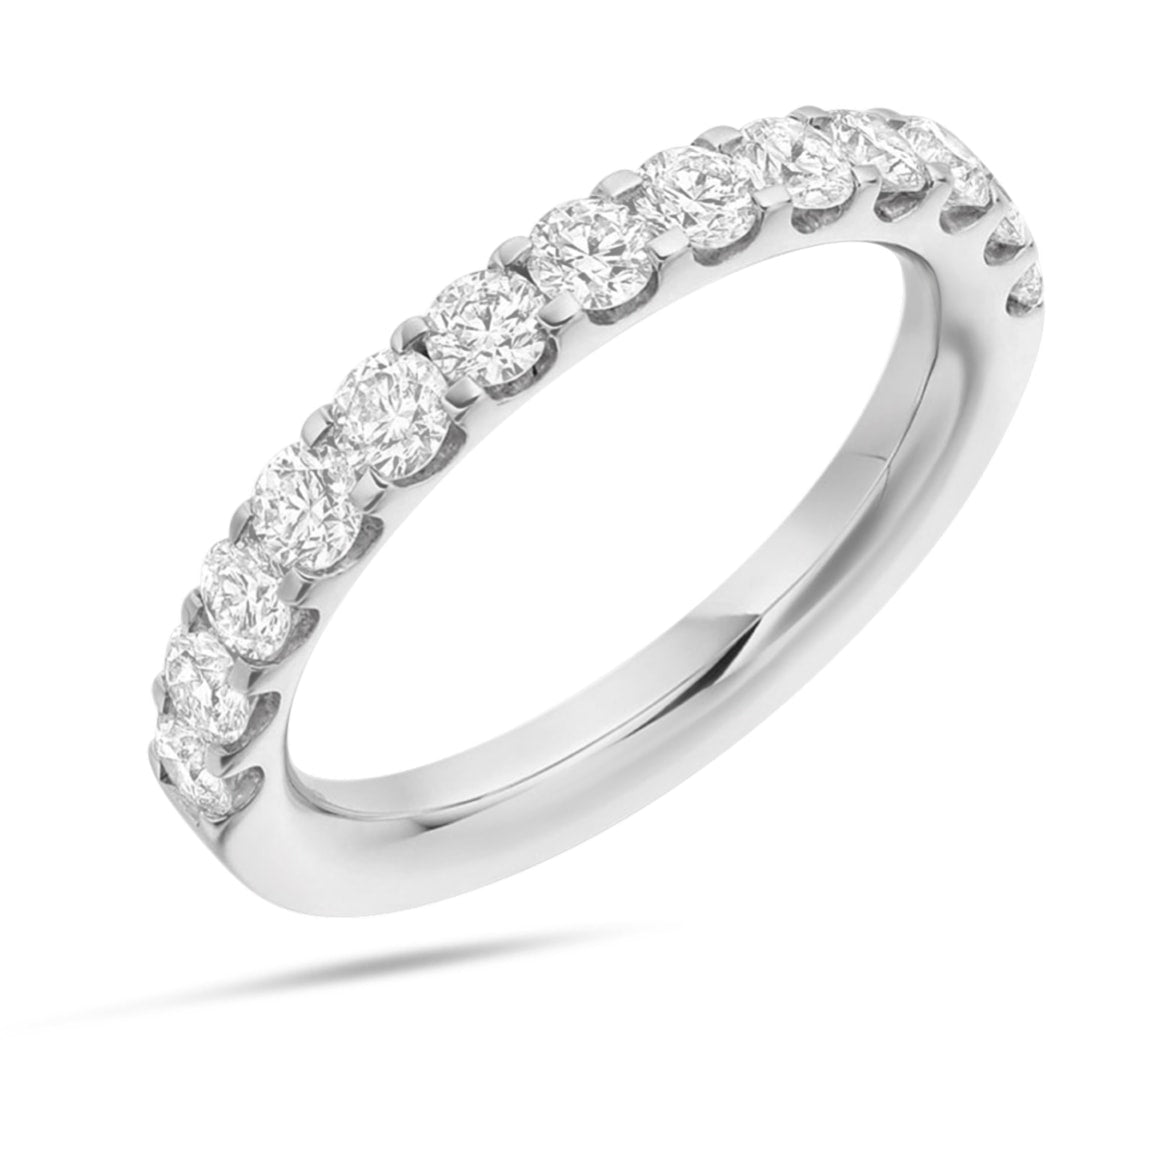 Moire Half Eternity Diamond Ring in 18k White Gold Vermeil